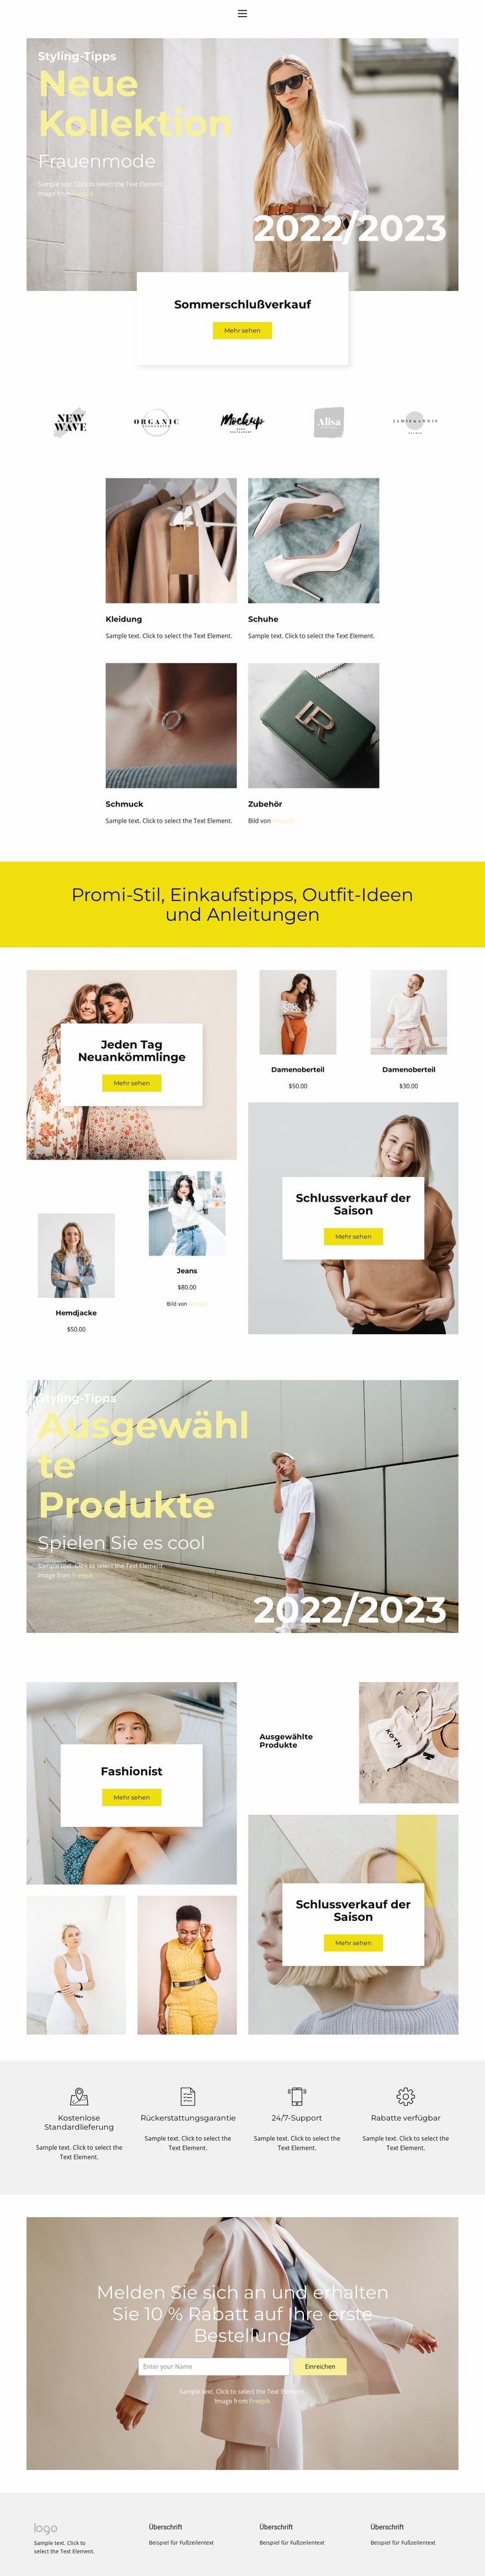 Fashionist sagen Website design